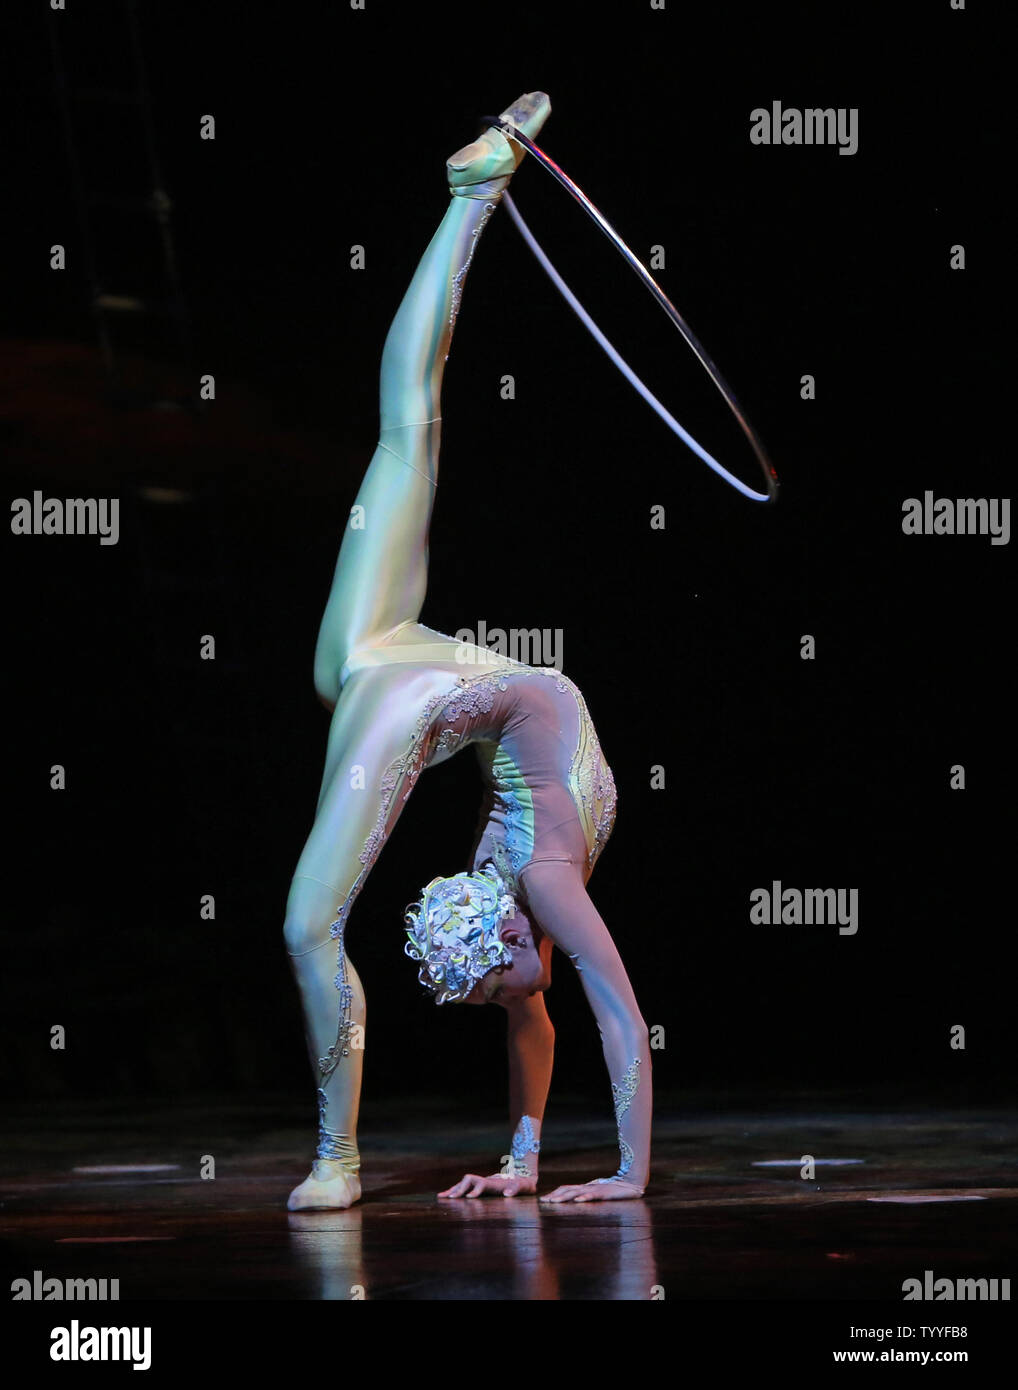 Ein Künstler aus dem Cirque du Soleil "Alegria" auf öffnung Nacht am Palais Omnisports von Bercy in Paris am 28. November 2012 führt. Die Show, die ursprünglich im April 1994 uraufgeführt, hat über 5000-mal durchgeführt und von über 10 Millionen Zuschauer in mehr als 65 Städten rund um die Welt gesehen. UPI/David Silpa. Stockfoto